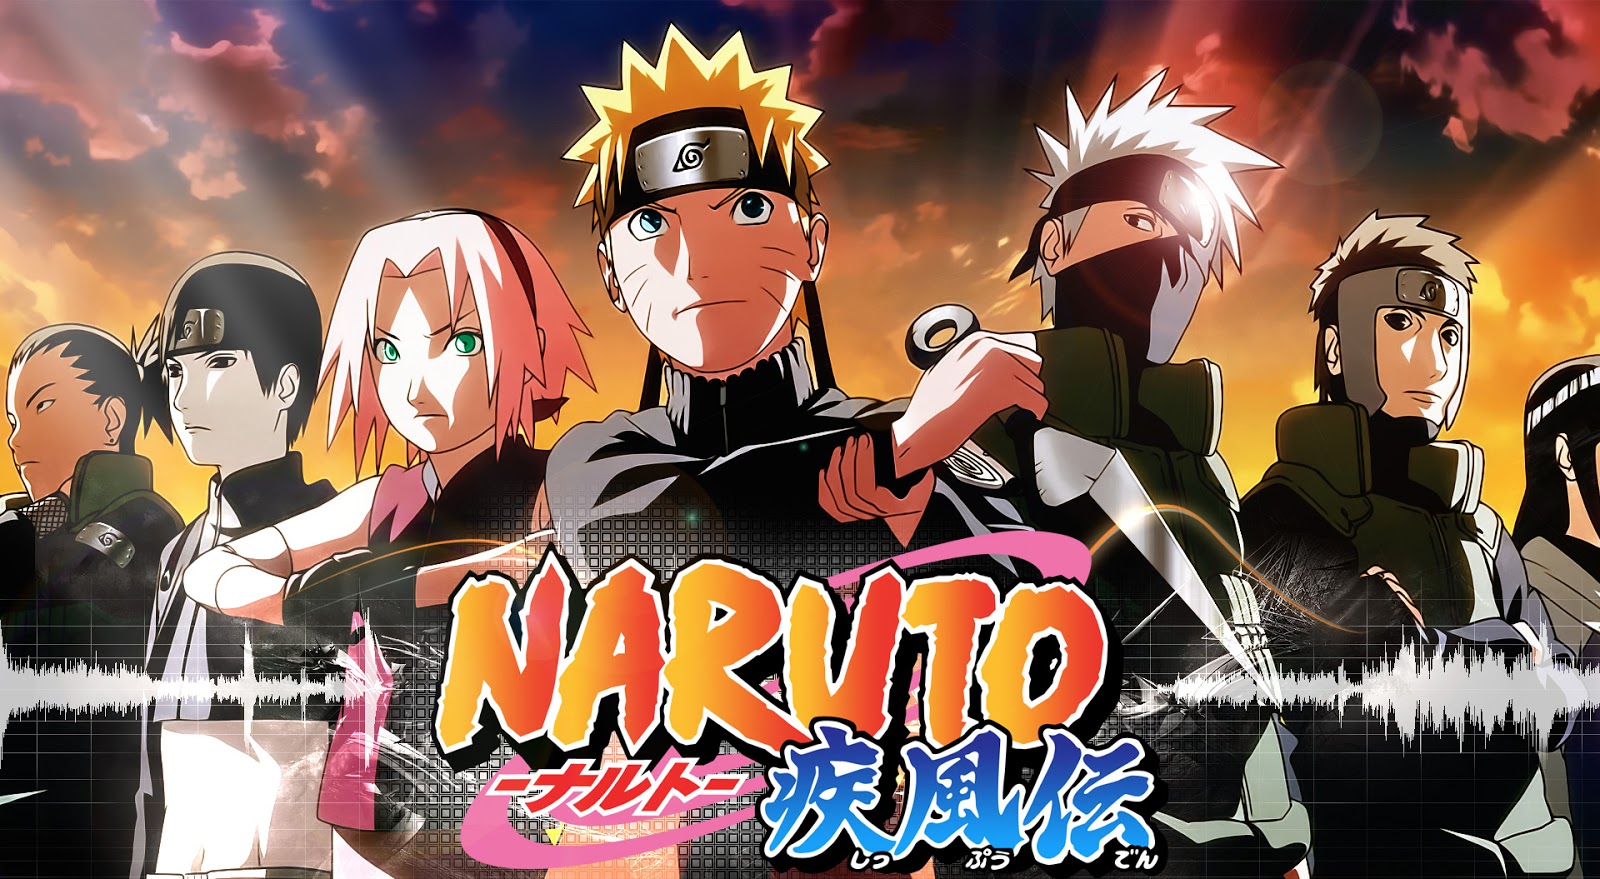 مشاهدة ناروتو شيبودن الحلقة 469 مترجم للعربية Naruto Shippuden بجودة عالية Hd